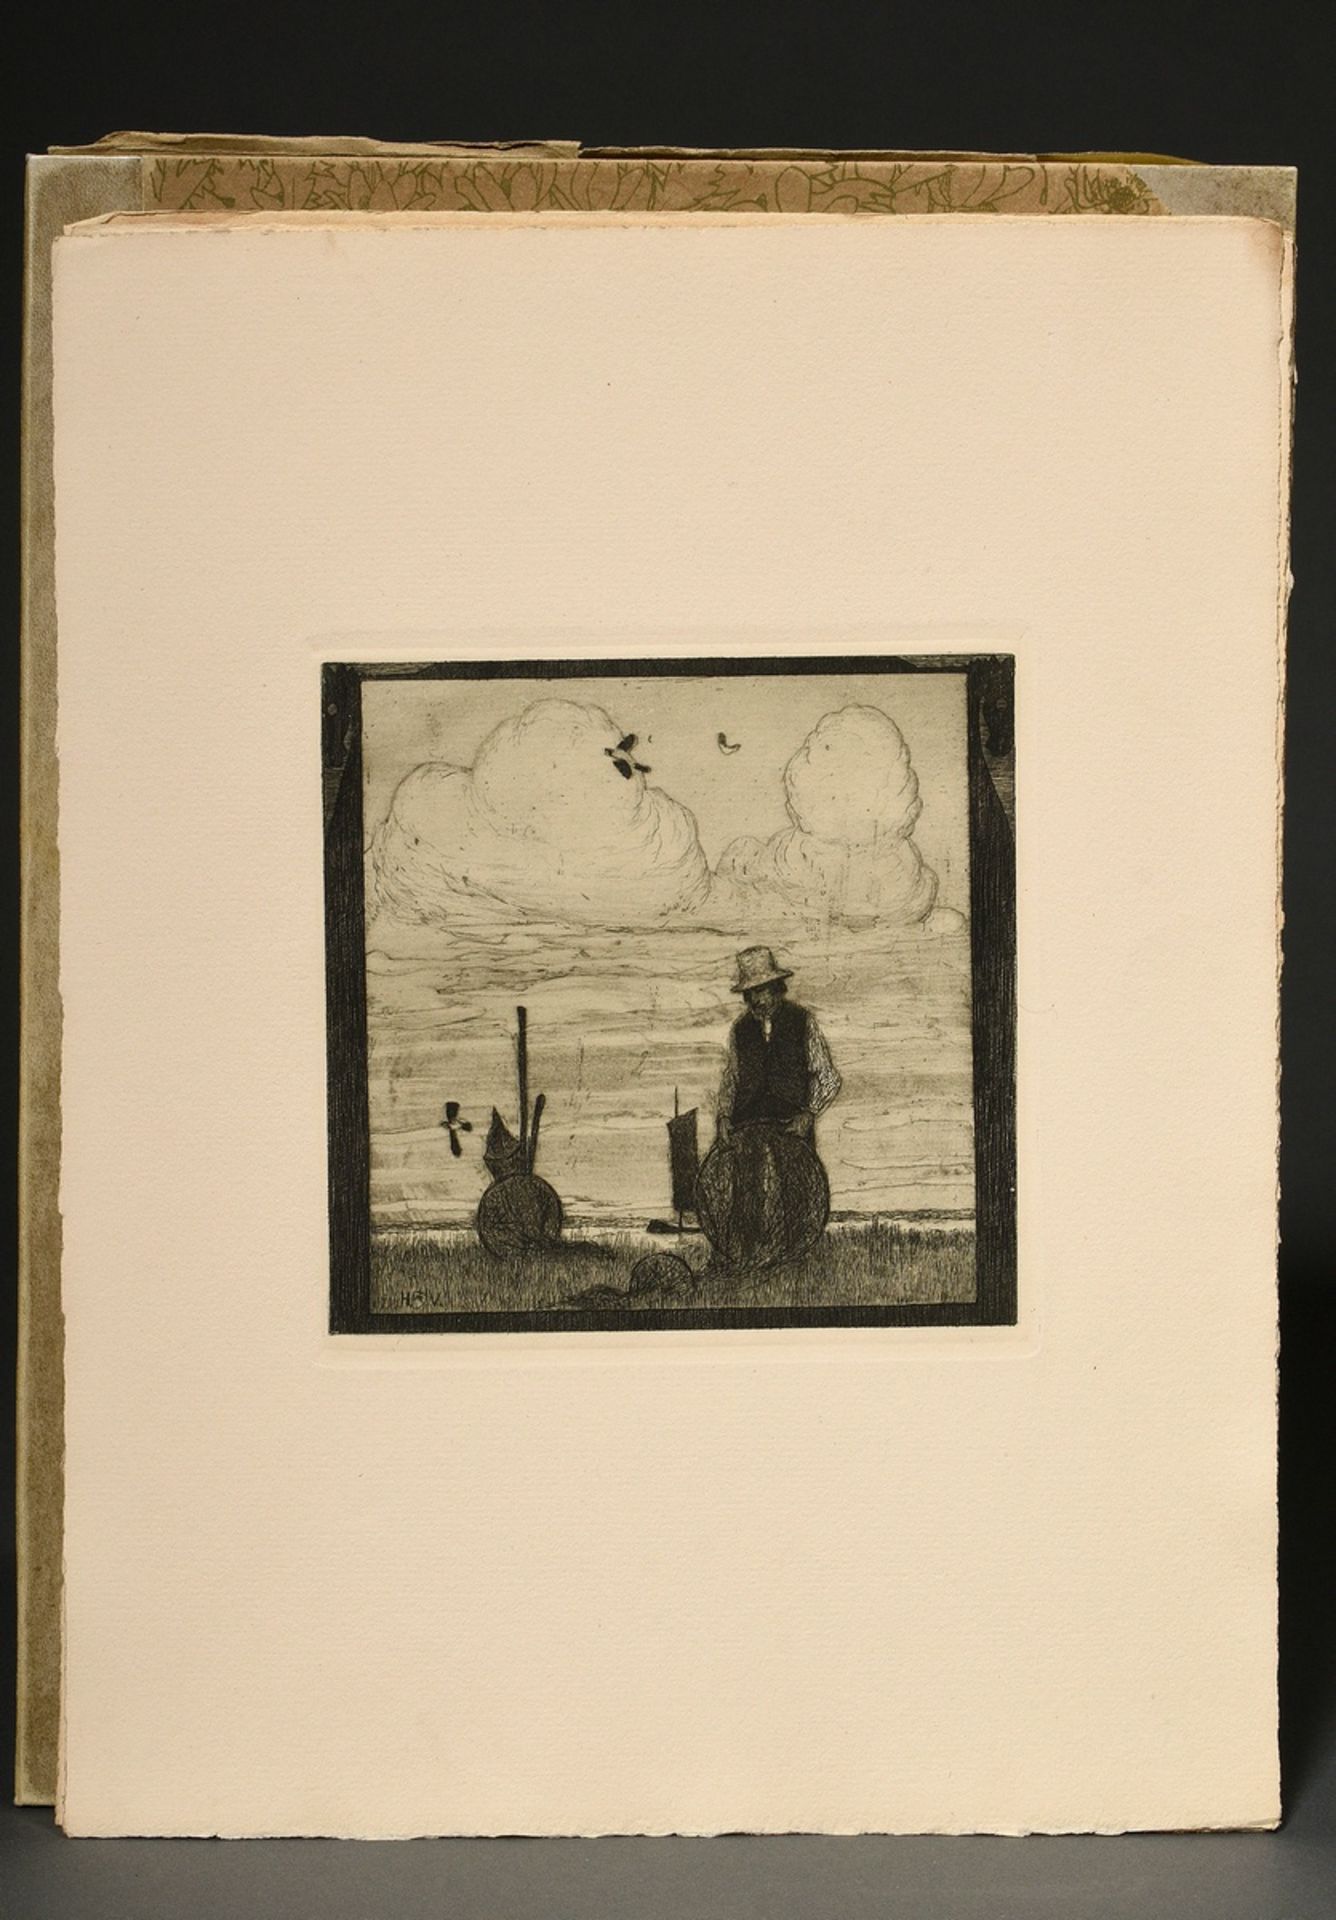 Vogeler, Heinrich (1872-1942) "An den Frühling" 1899/1901, portfolio with 10 etchings and prelimina - Image 12 of 25